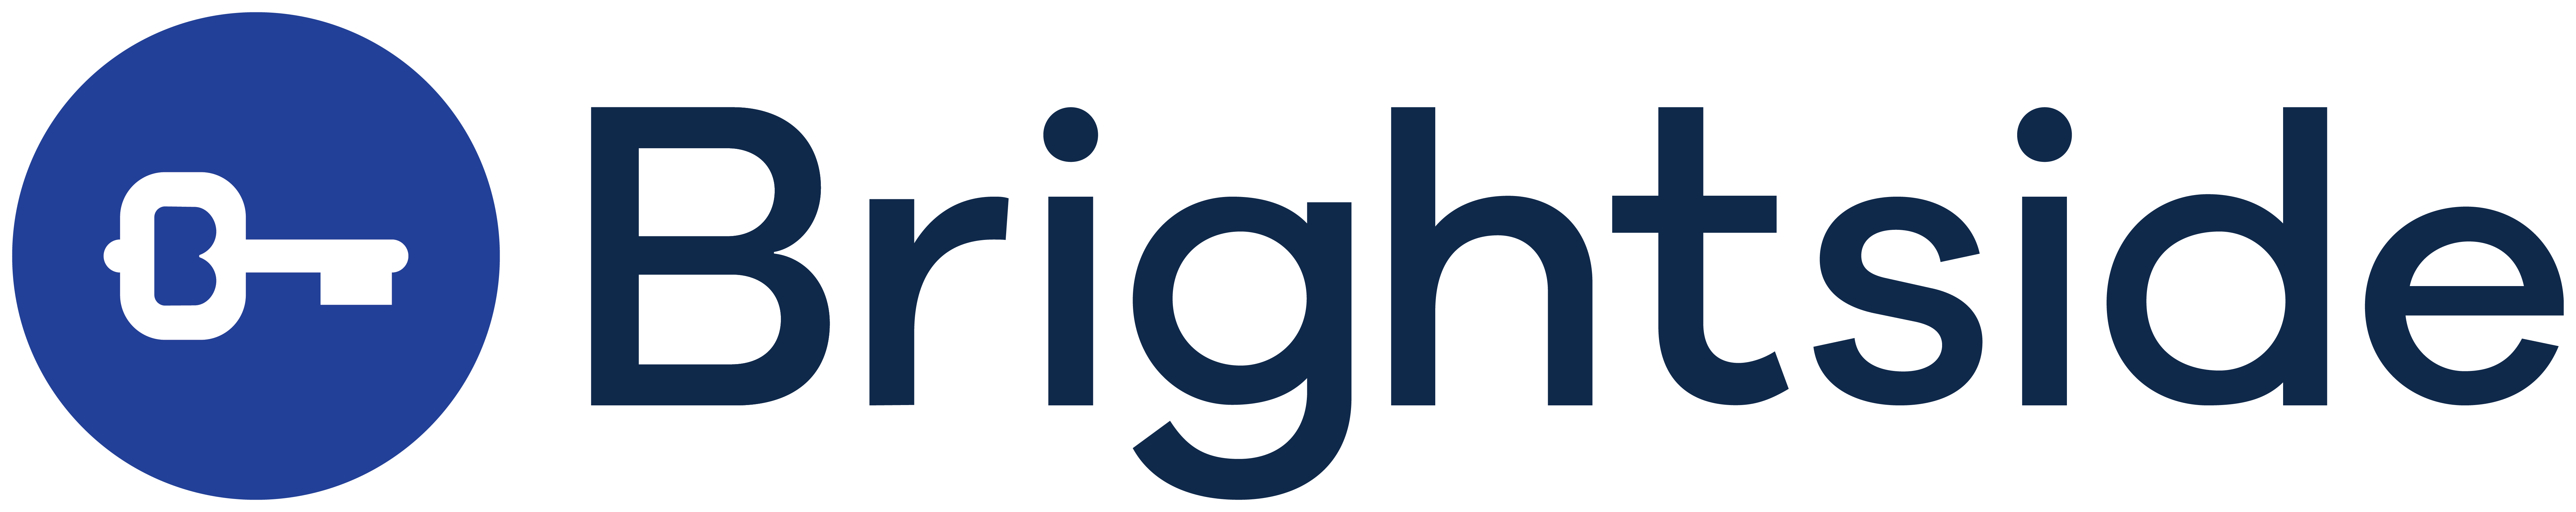 Brightside company logo